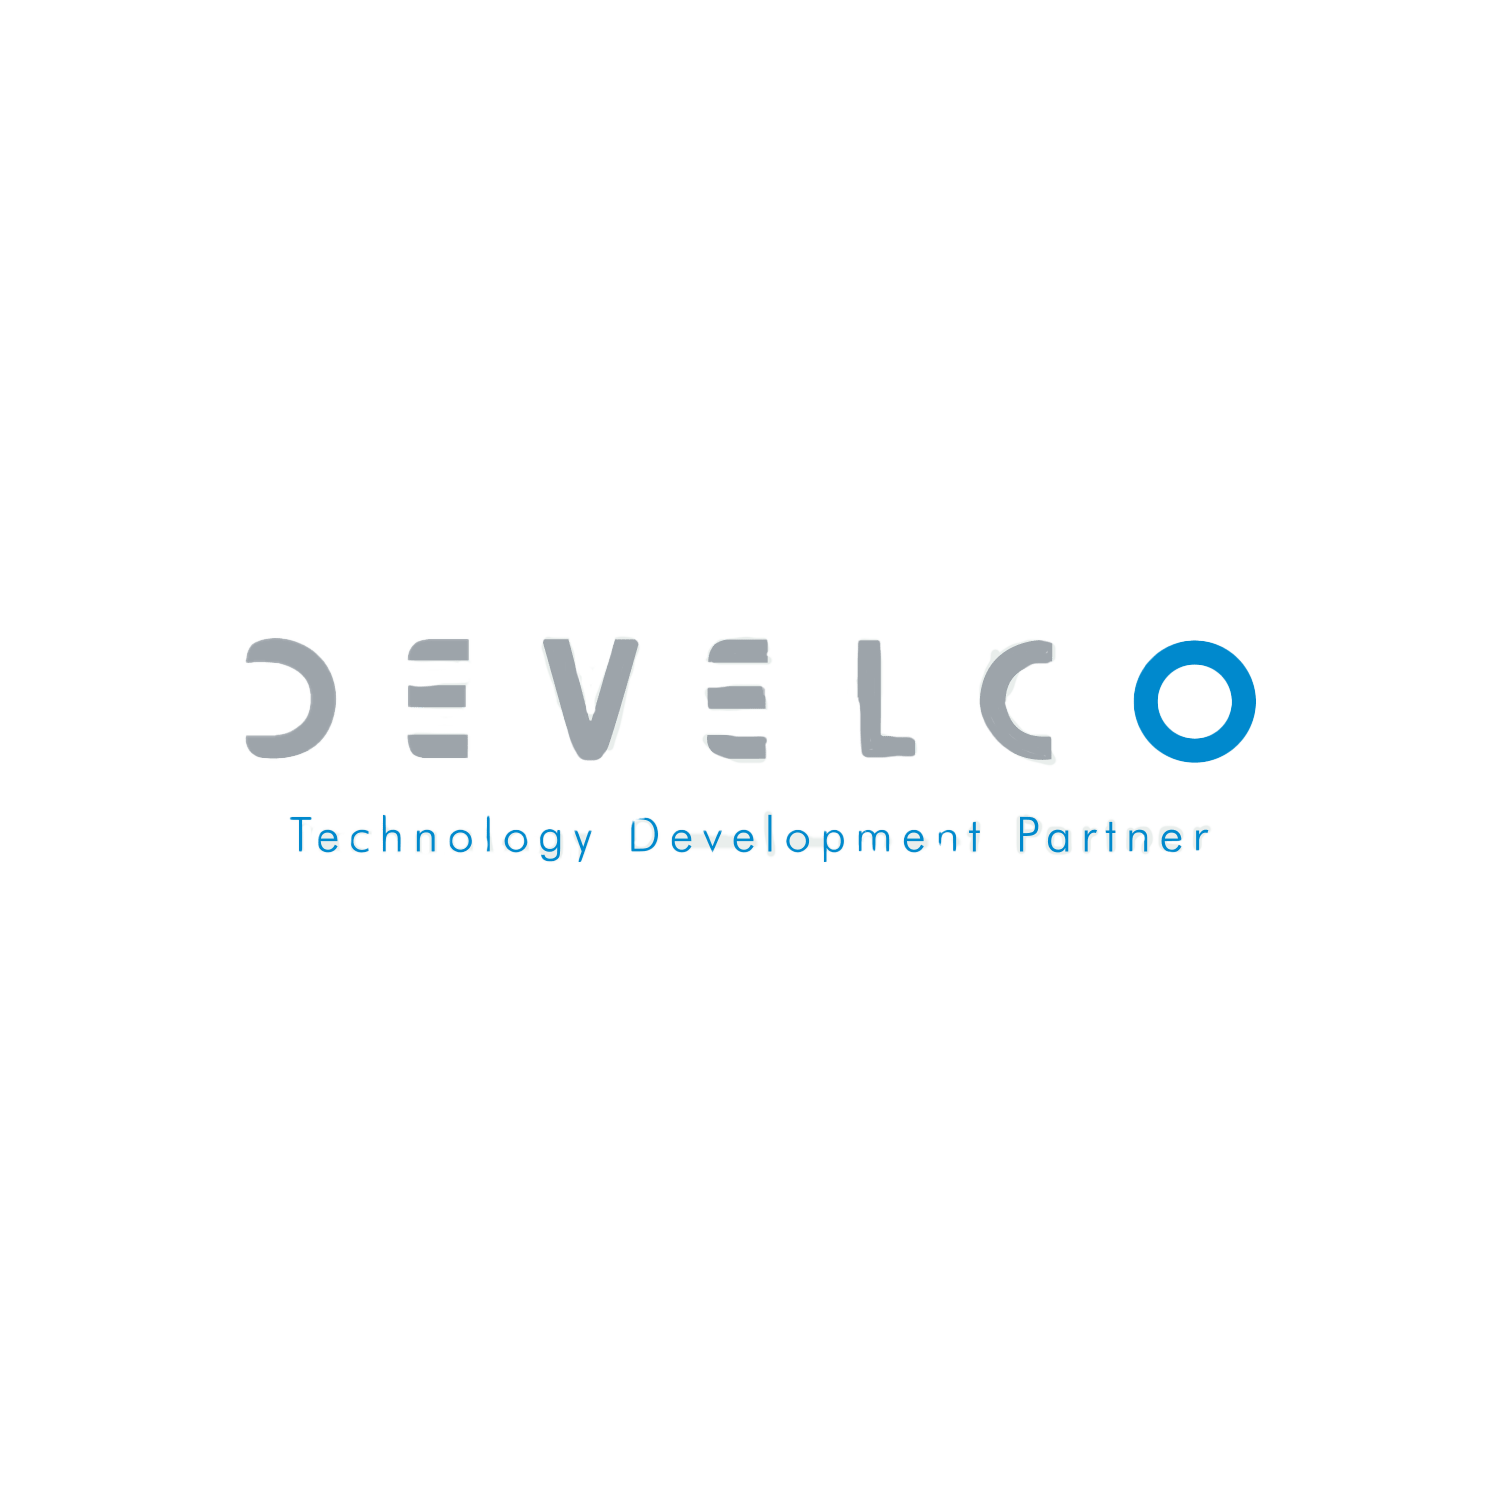 Develco-News-Logo-Image